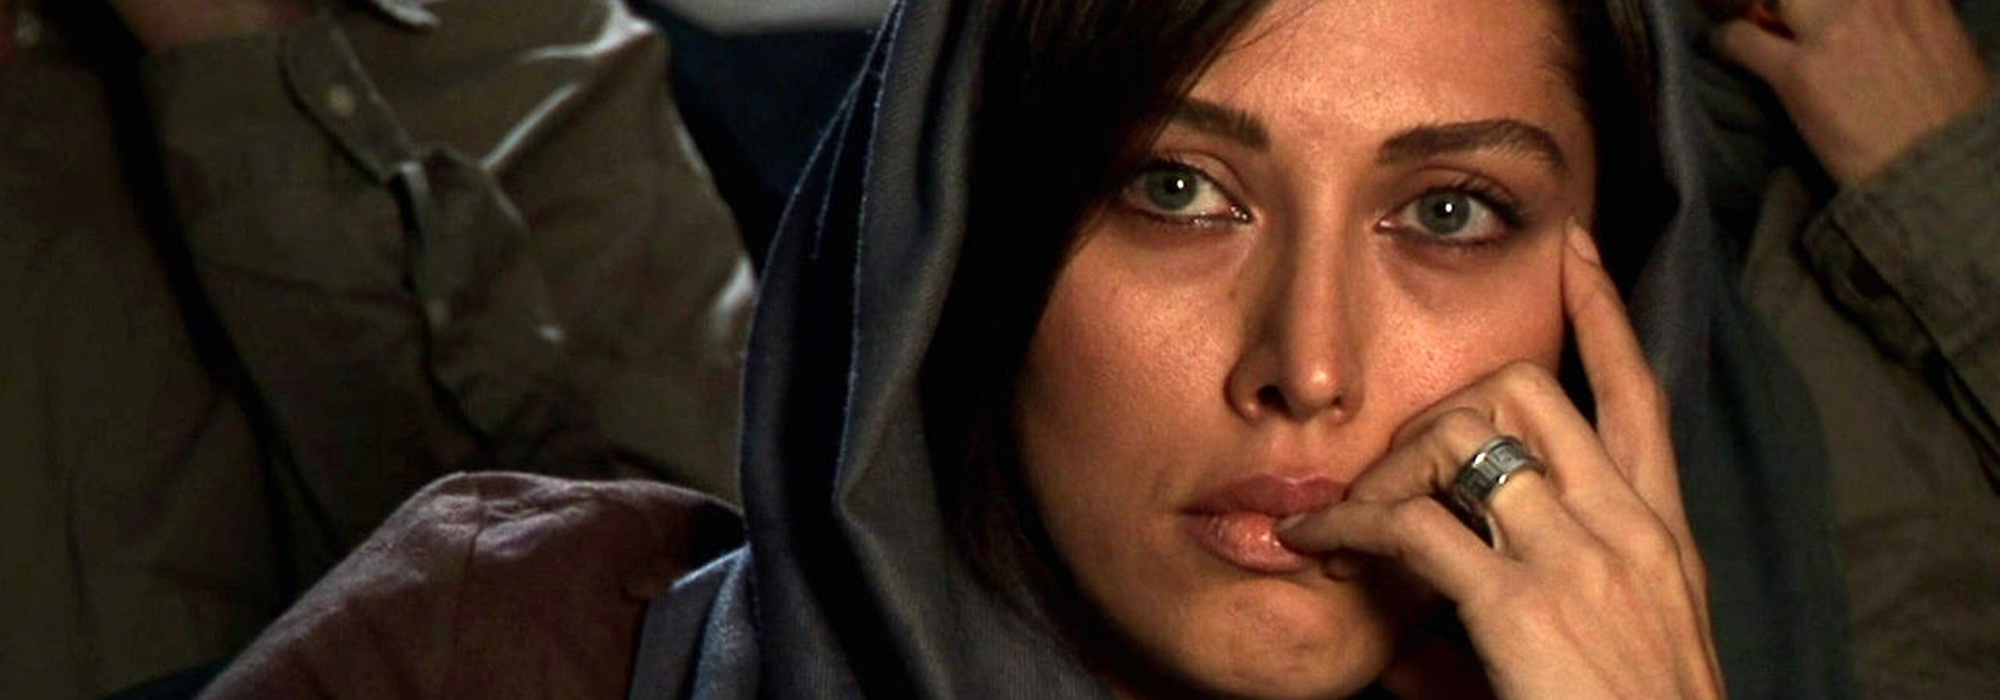 The women in Abbas Kiarostami’s cinema